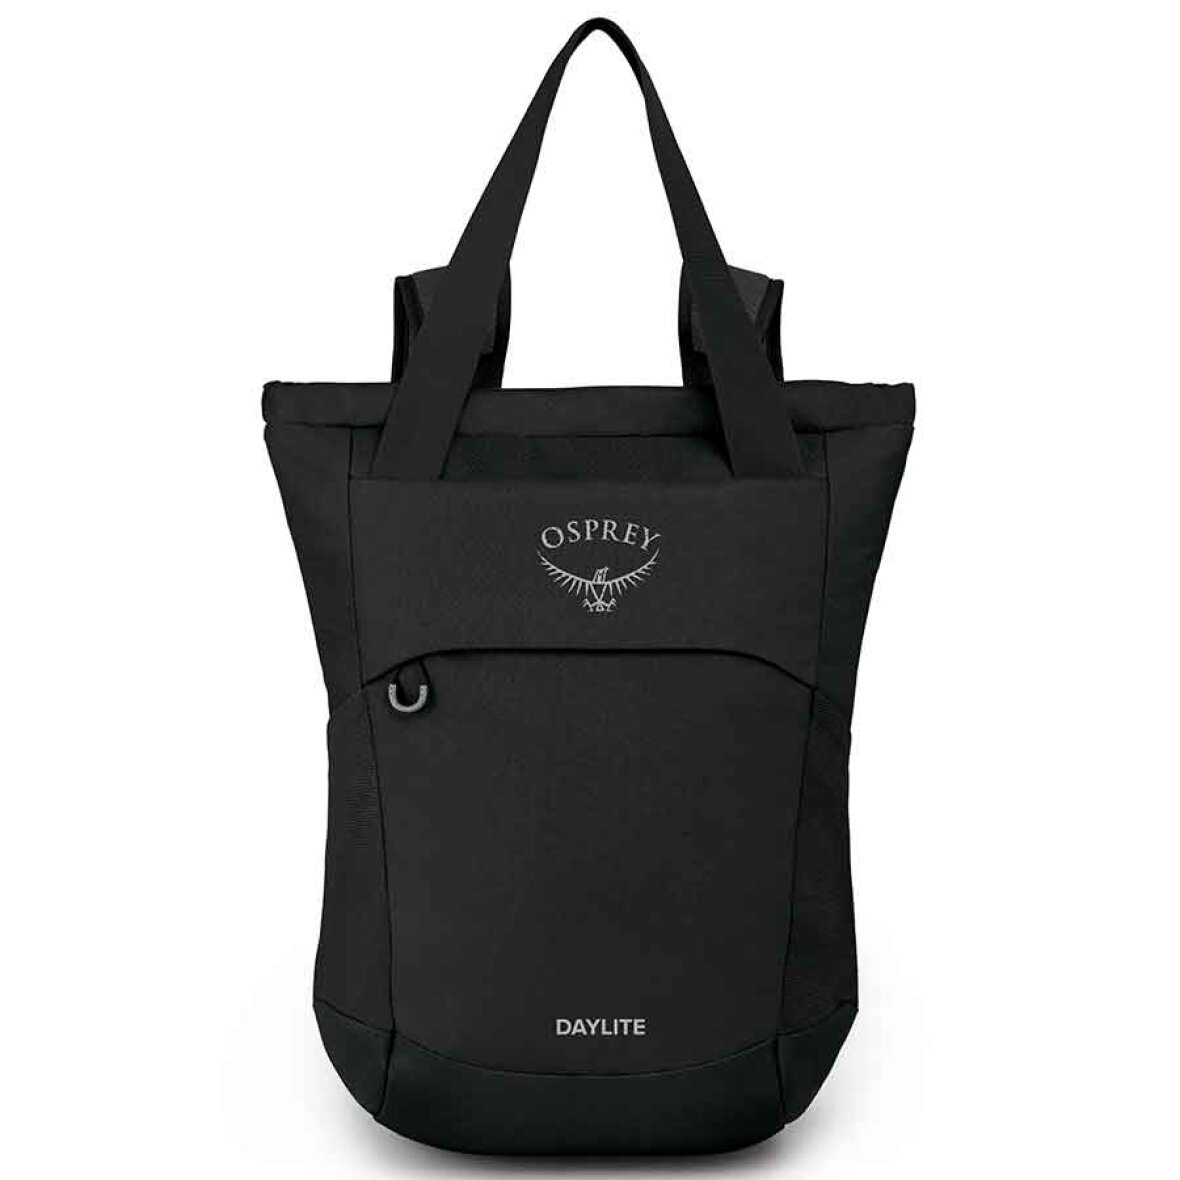 Sikker stavelse Søg Bærepose og rygsæk i én taske | Rummer 20 liter | Køb den her